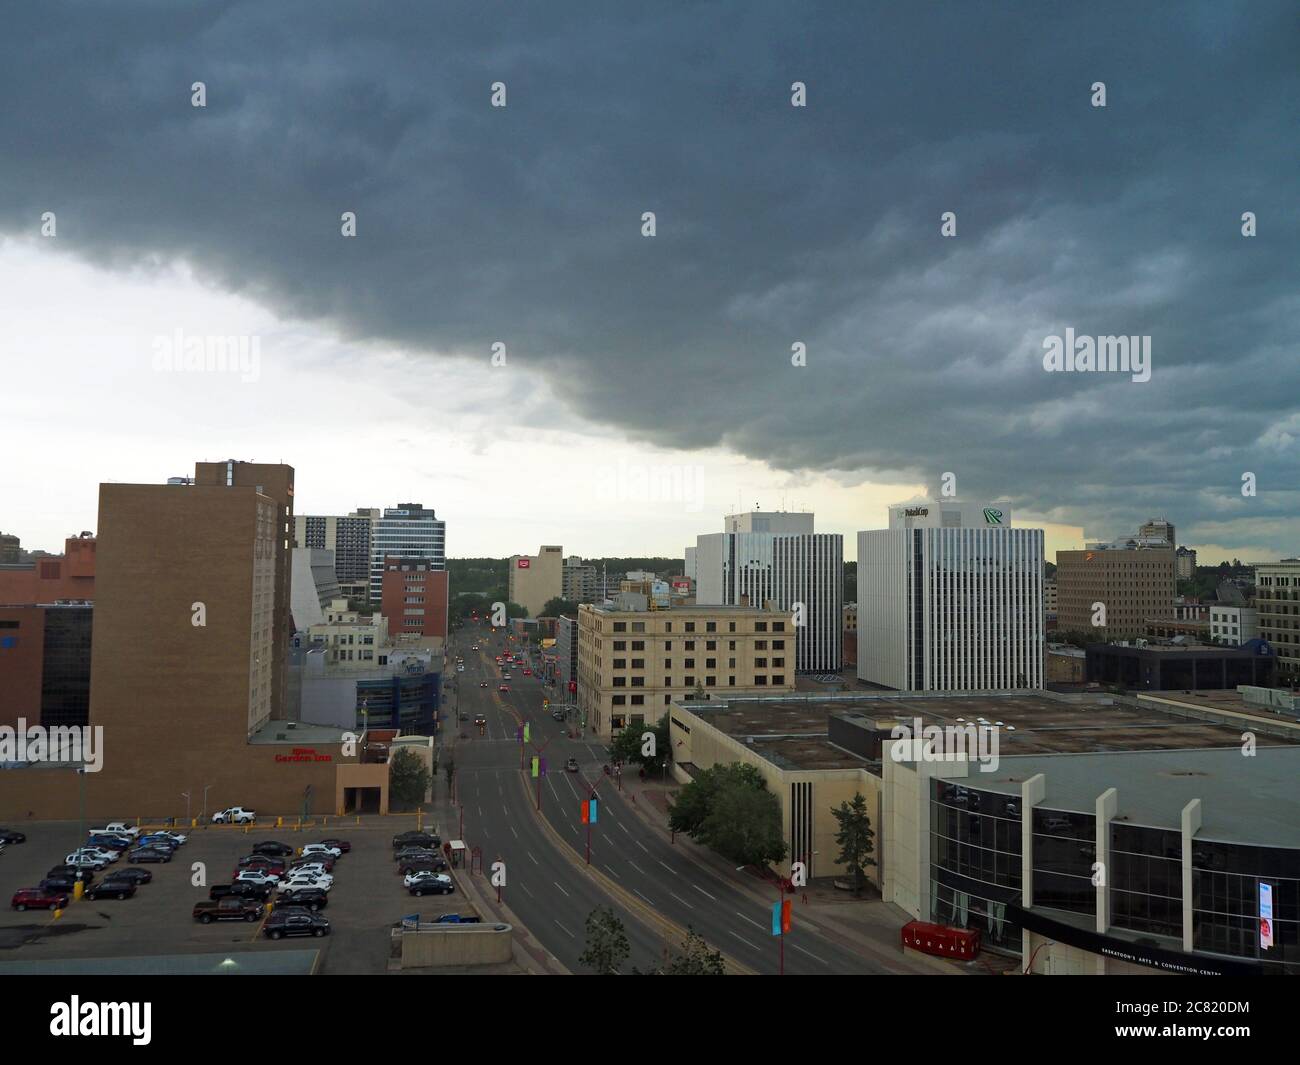 Storm clouds over downtown Saskatoon, Saskatchewan, Canada Stock Photo